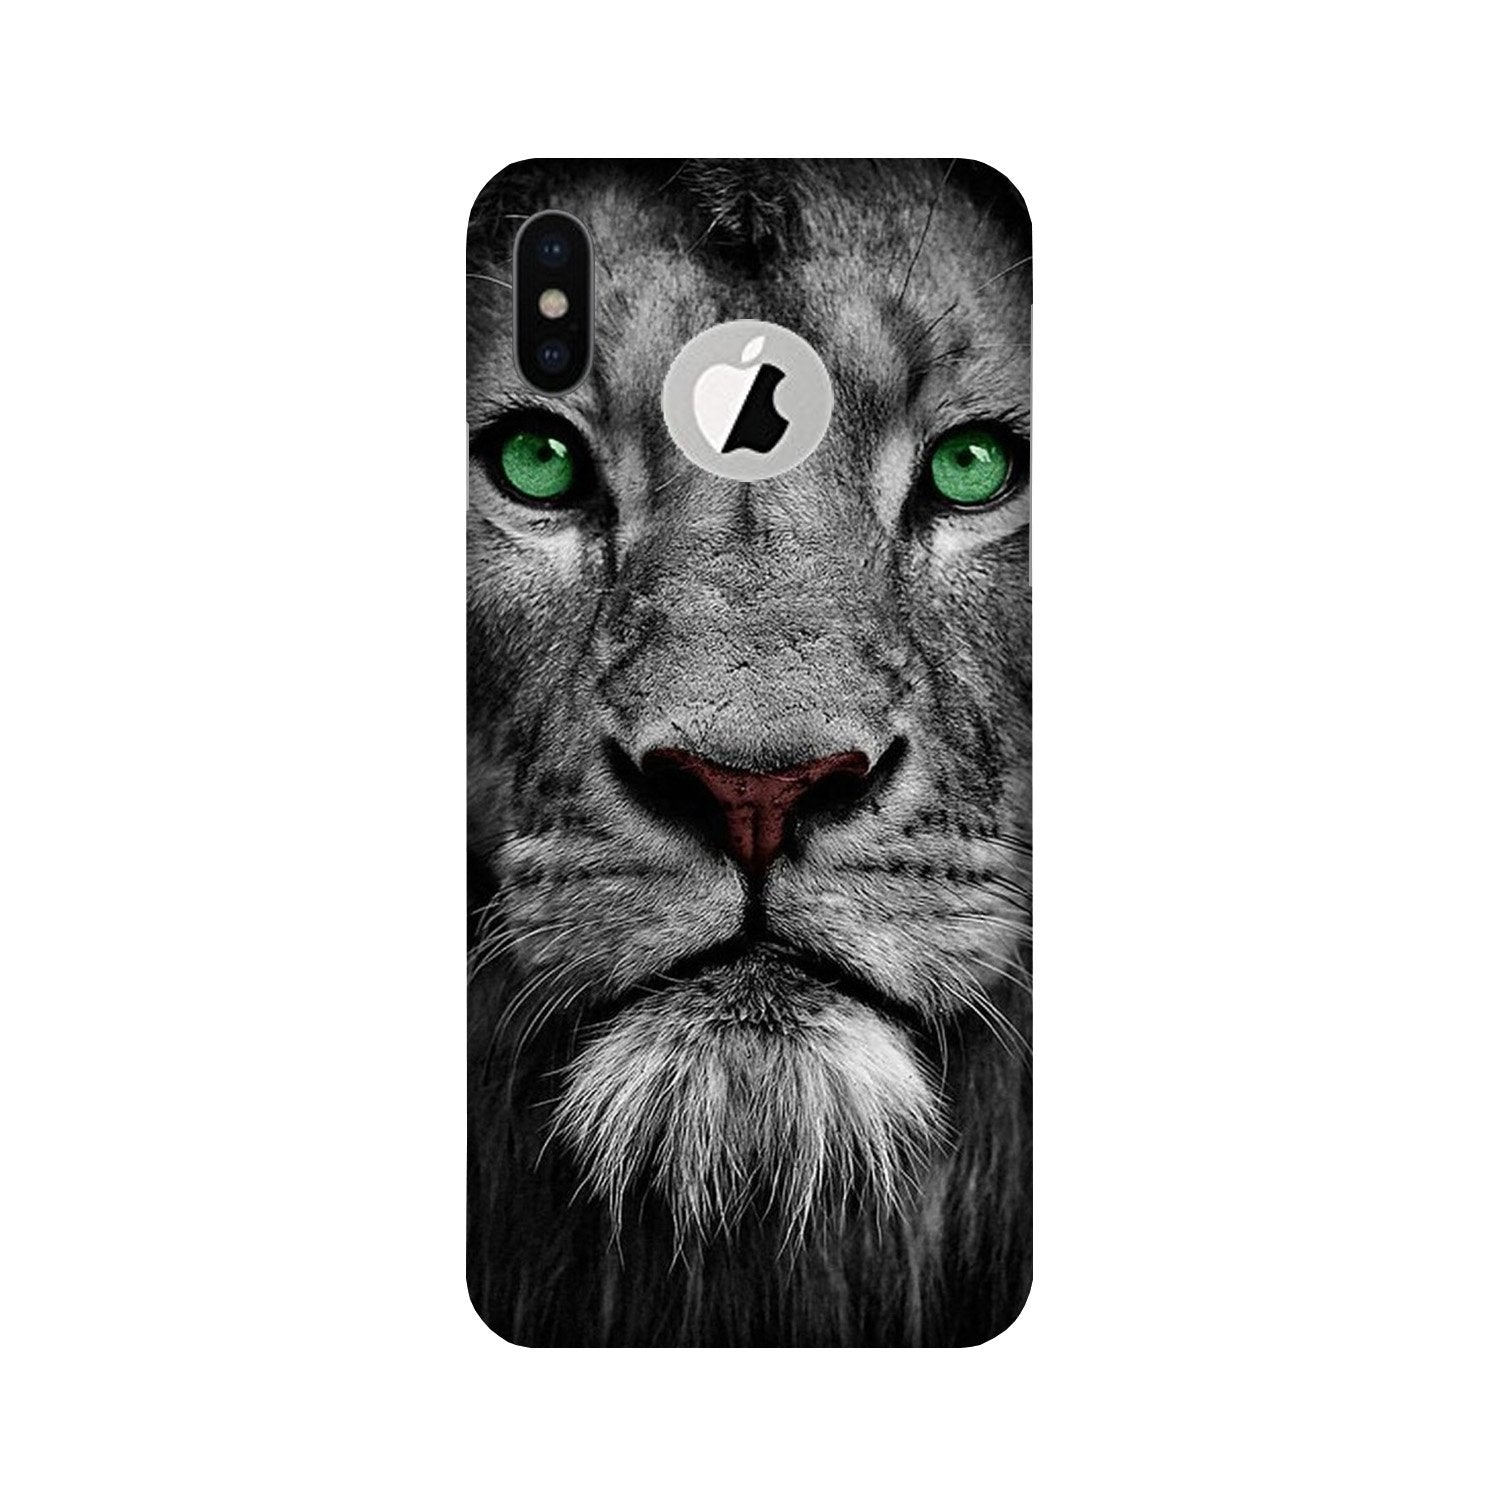 Lion Case for iPhone X logo cut (Design No. 272)